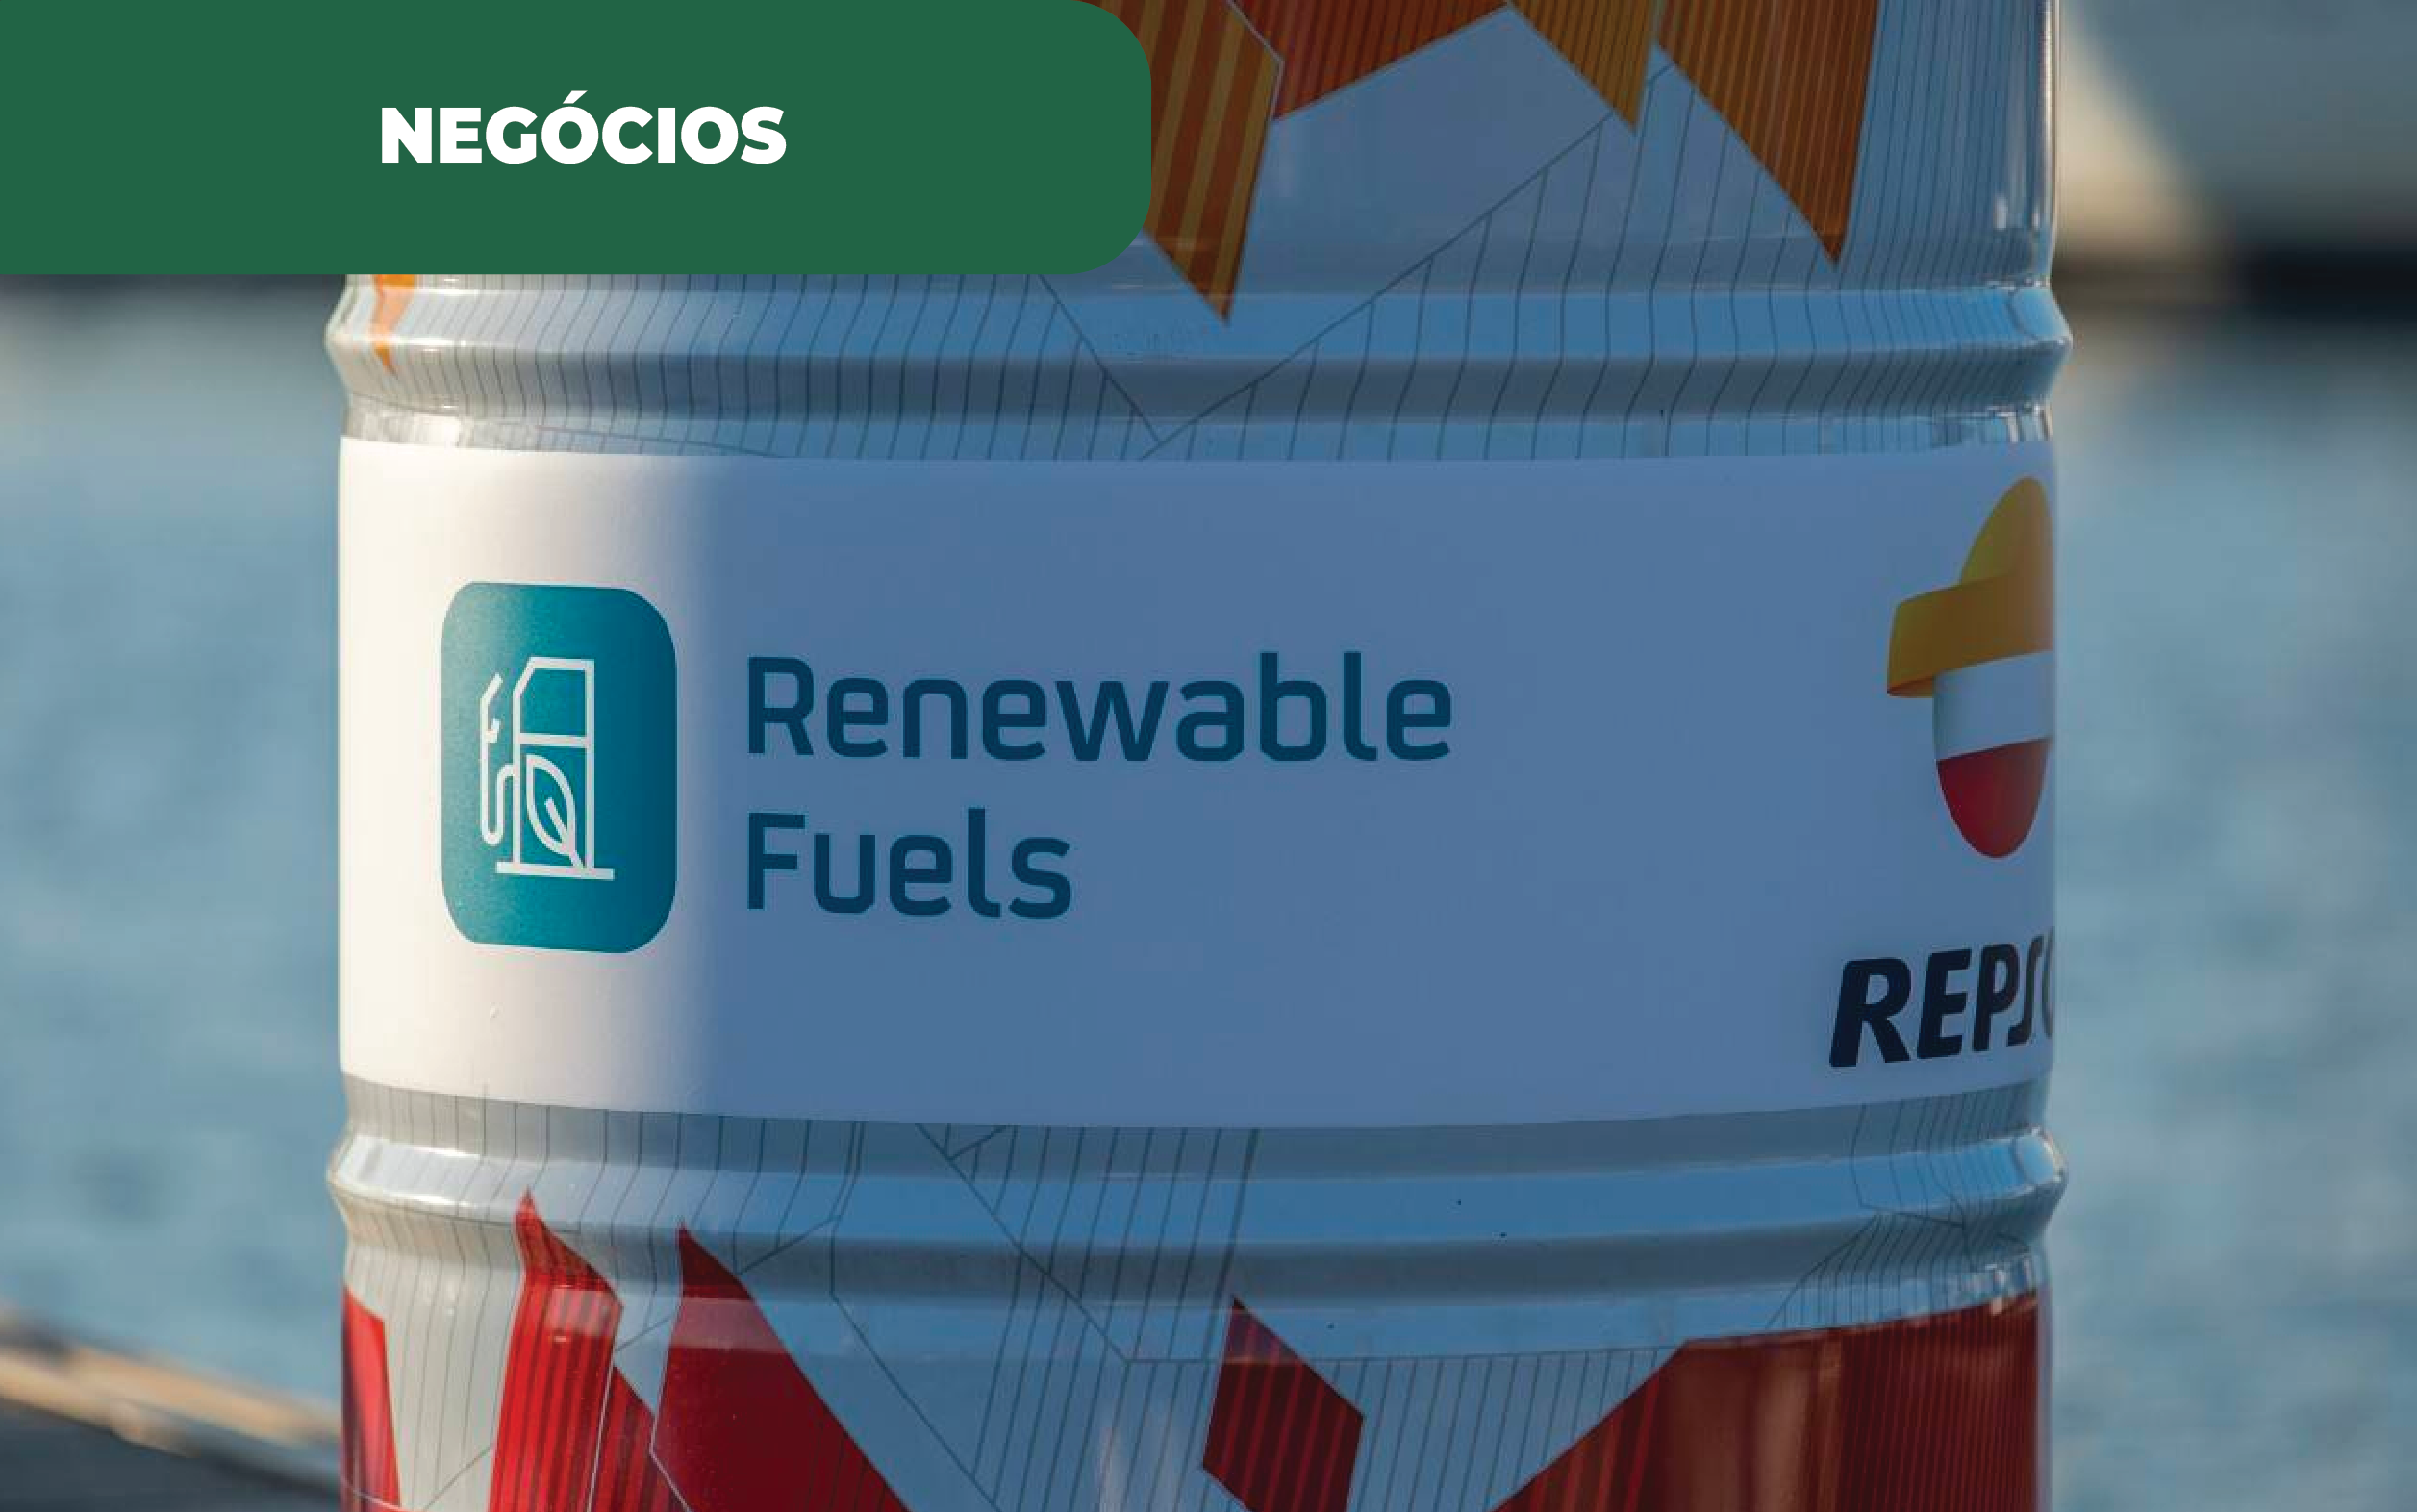 Imagem colorida de um barril de combustível 100% sustentável produzido pela Repsol.